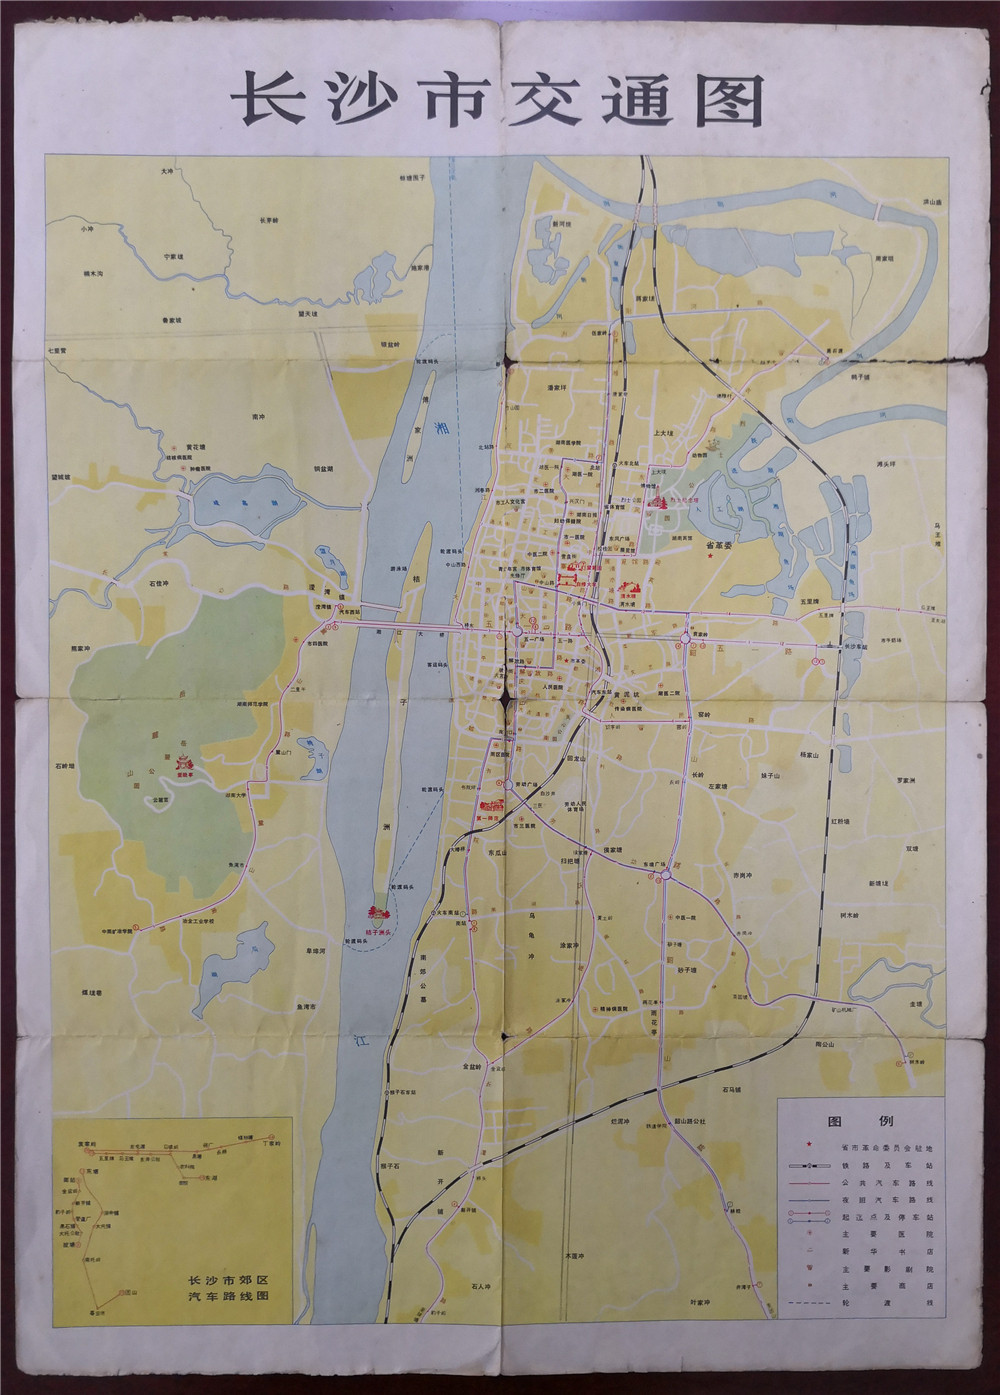 在1978年的《长沙市交通图》上，长沙城区集中于湘江以东、京广铁路以西，地图上的地名标识最北端到浏阳河止，最南端到井湾子，最东边到马王堆、圭塘，河西除了岳麓山就是湖南师范学院、湖南大学等几所高校。